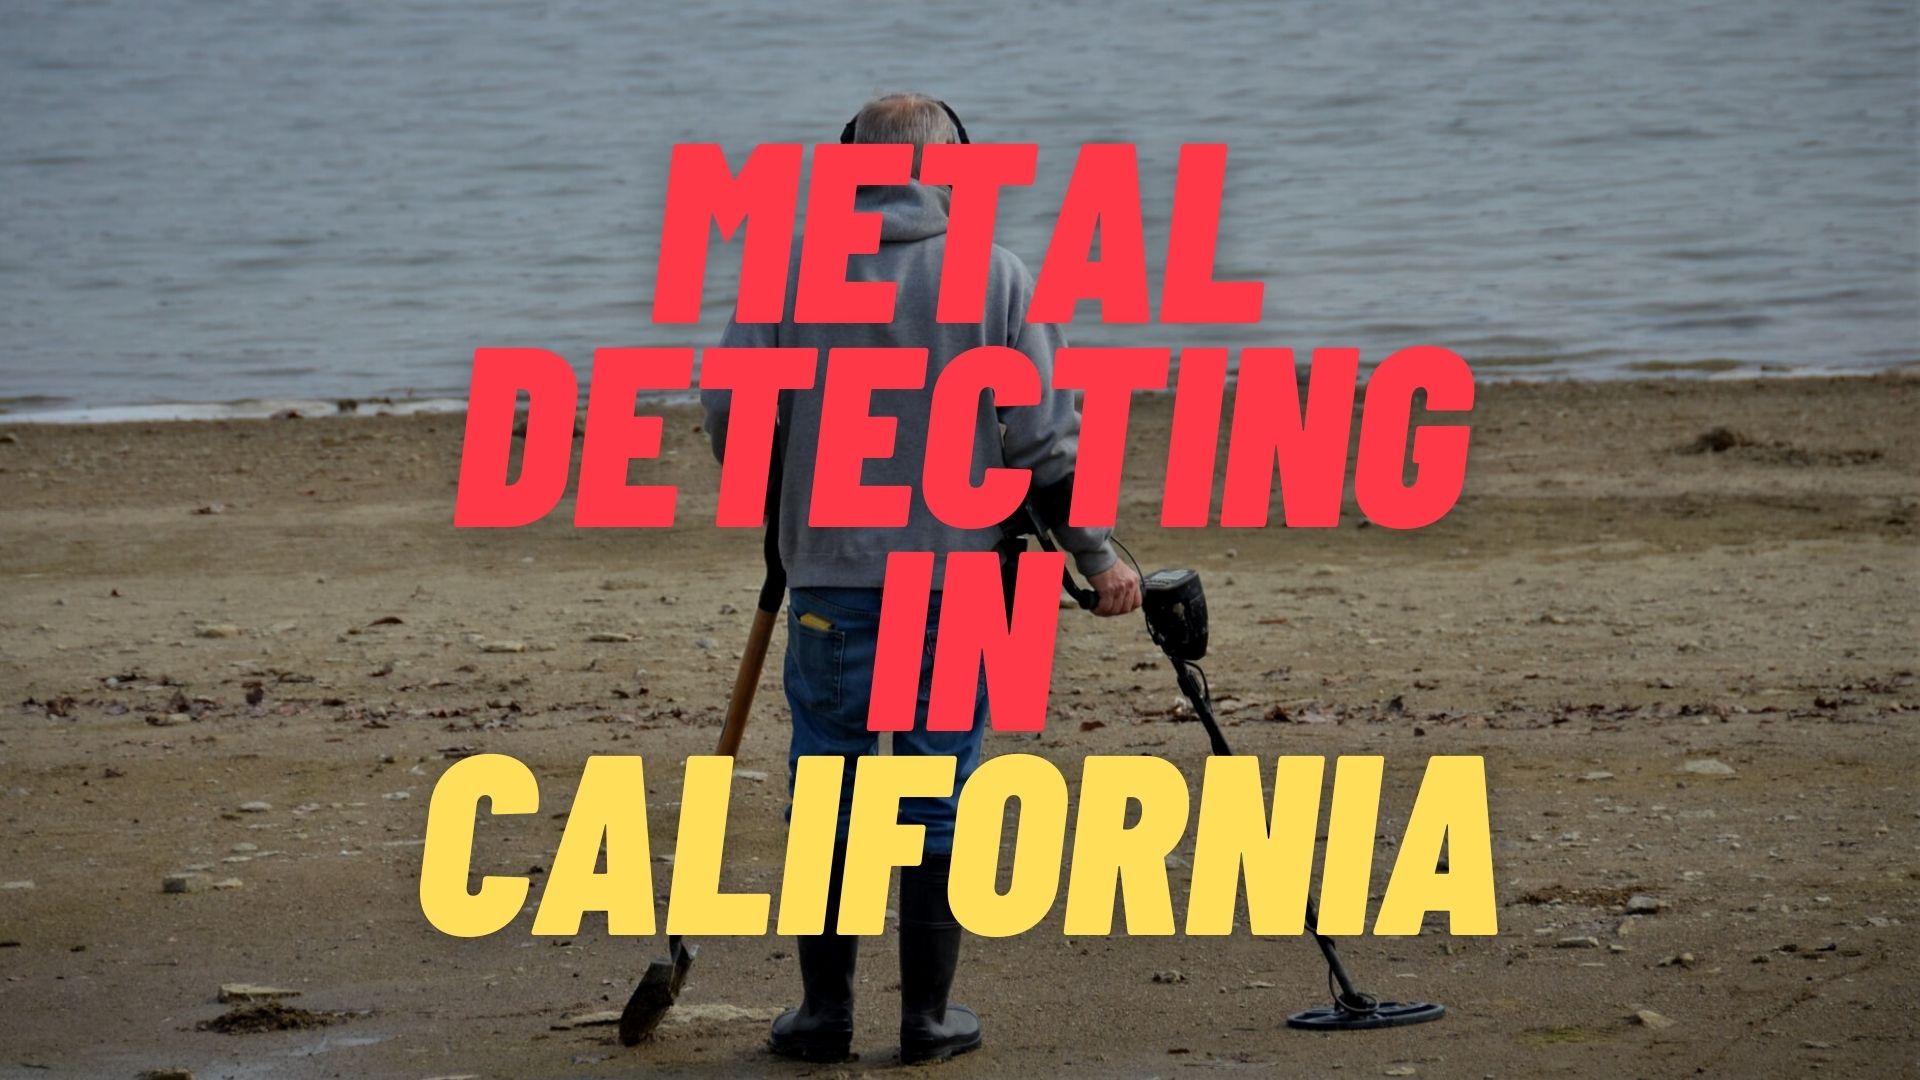 Metal Detecting in California